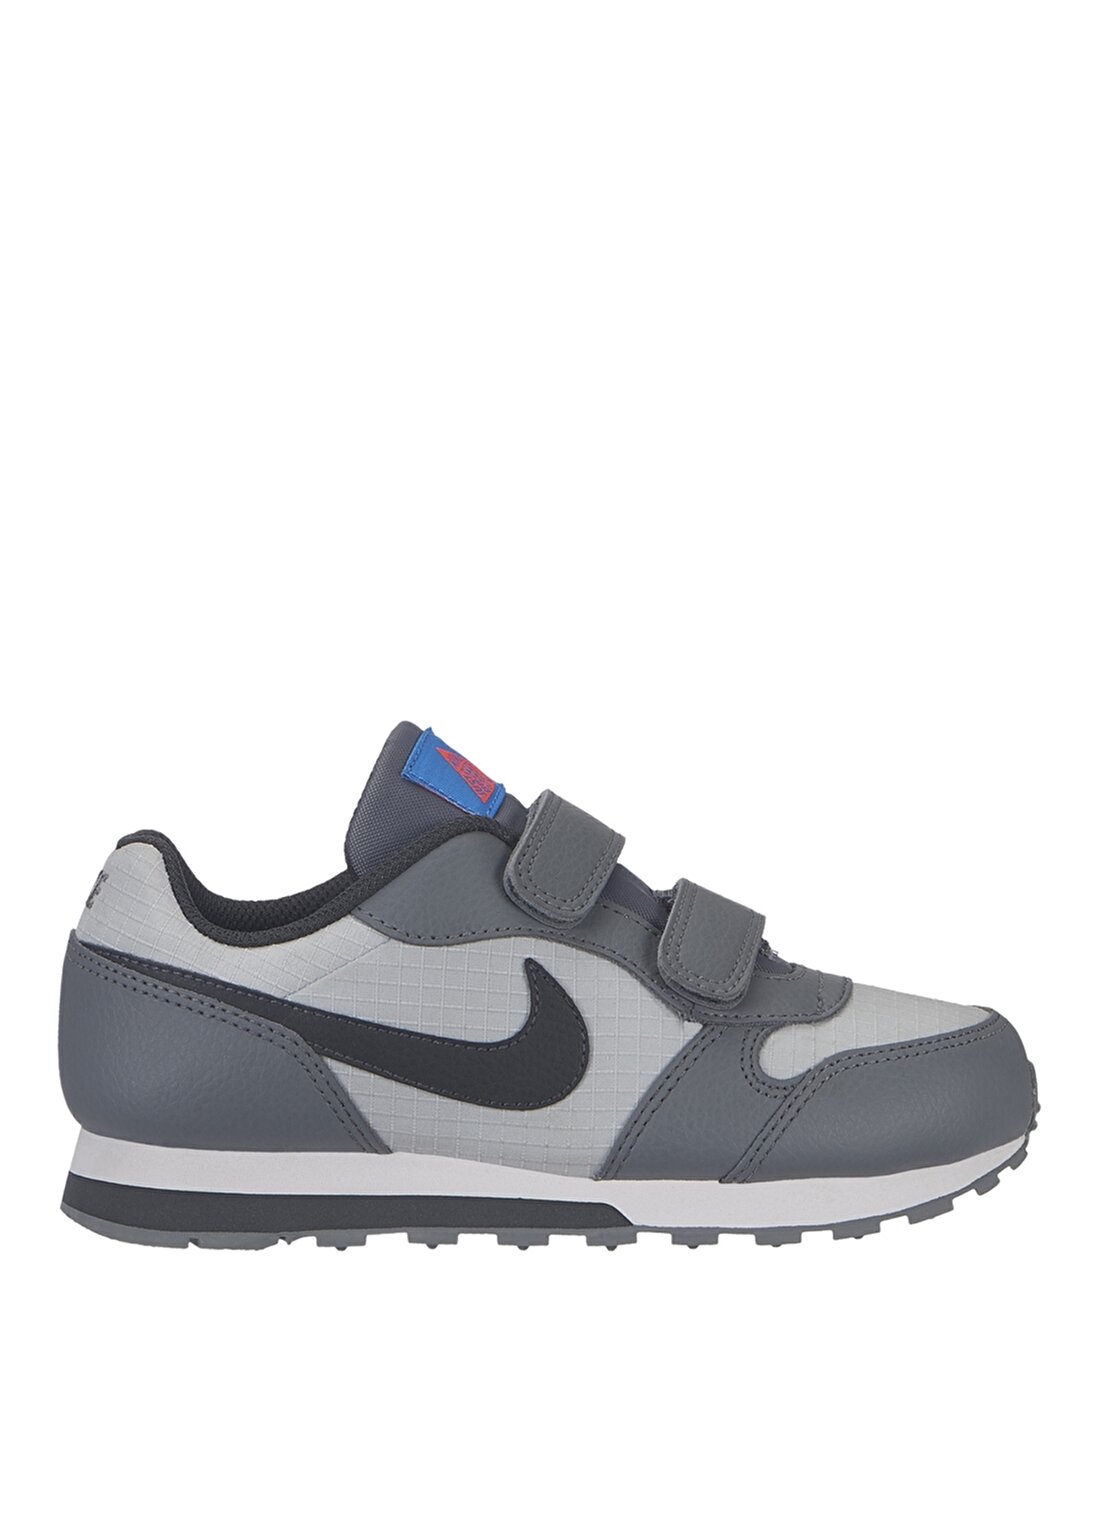 Nike Md Runner 2 (Ps) 807317-015 Yürüyüş Ayakkabısı